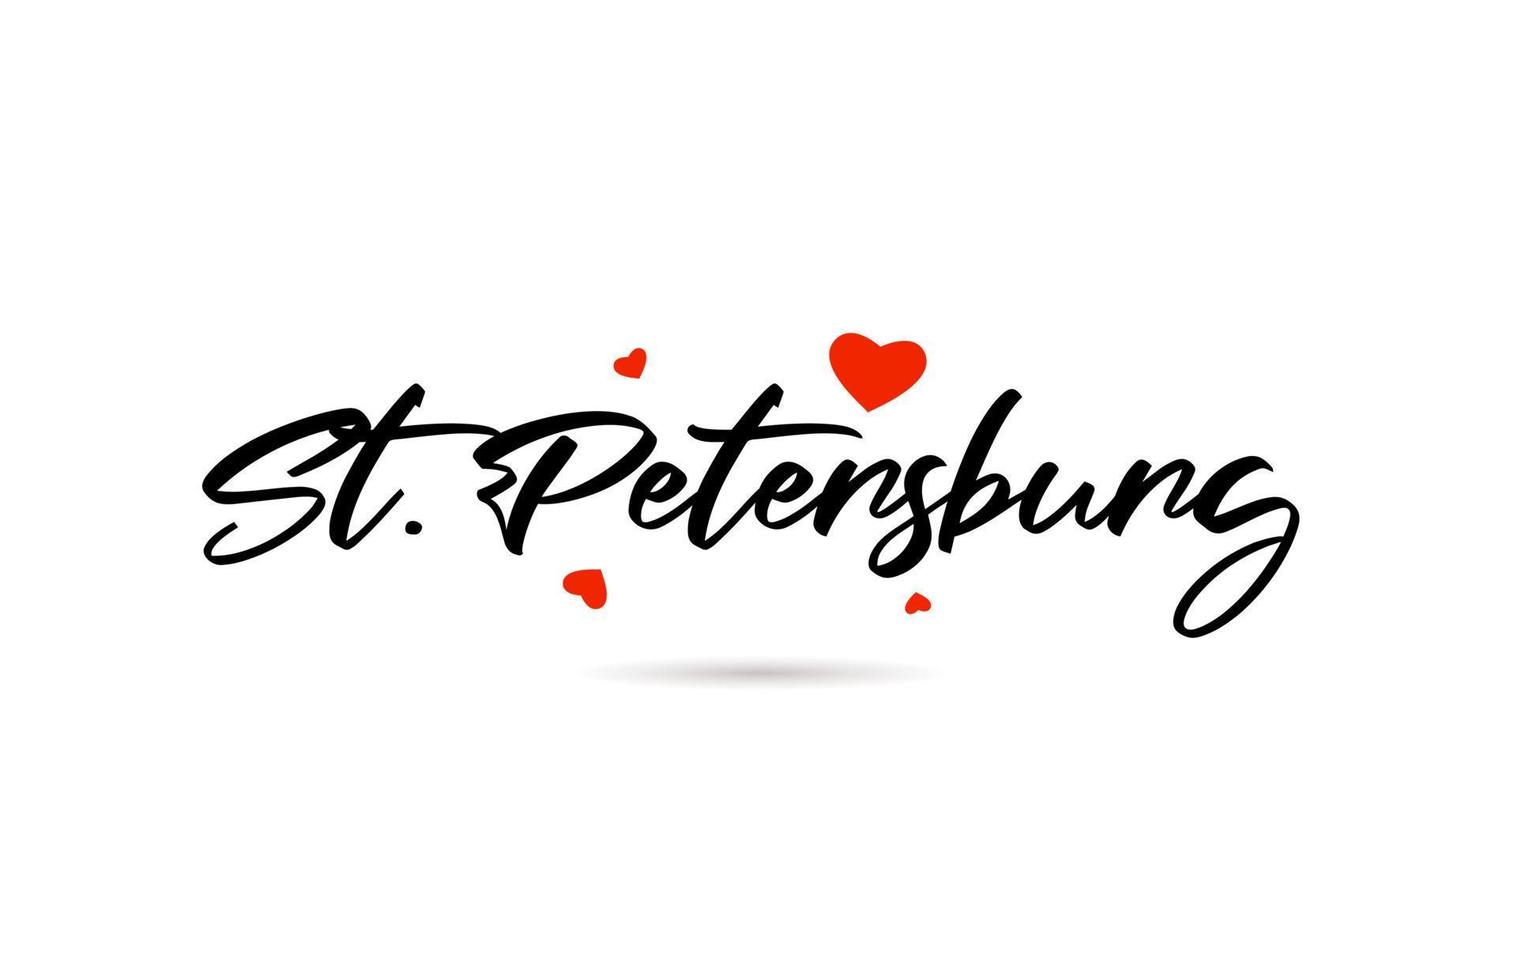 st. petersburg handgeschreven stad typografie tekst met liefde hart vector